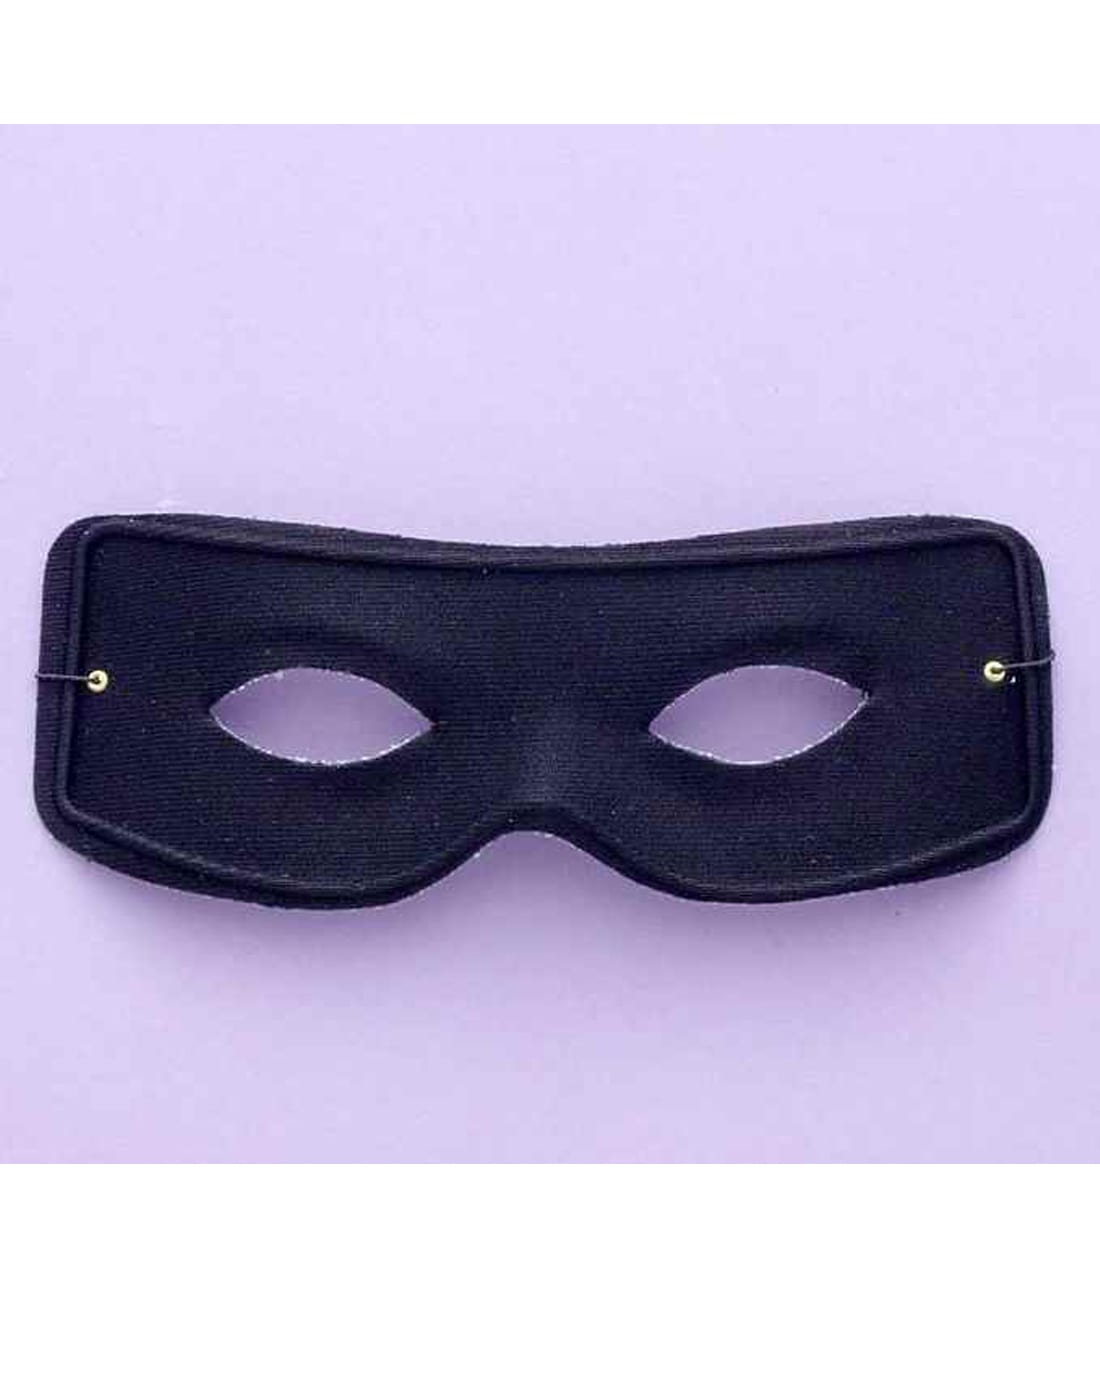 Masked Man Mask w/ Ties 2